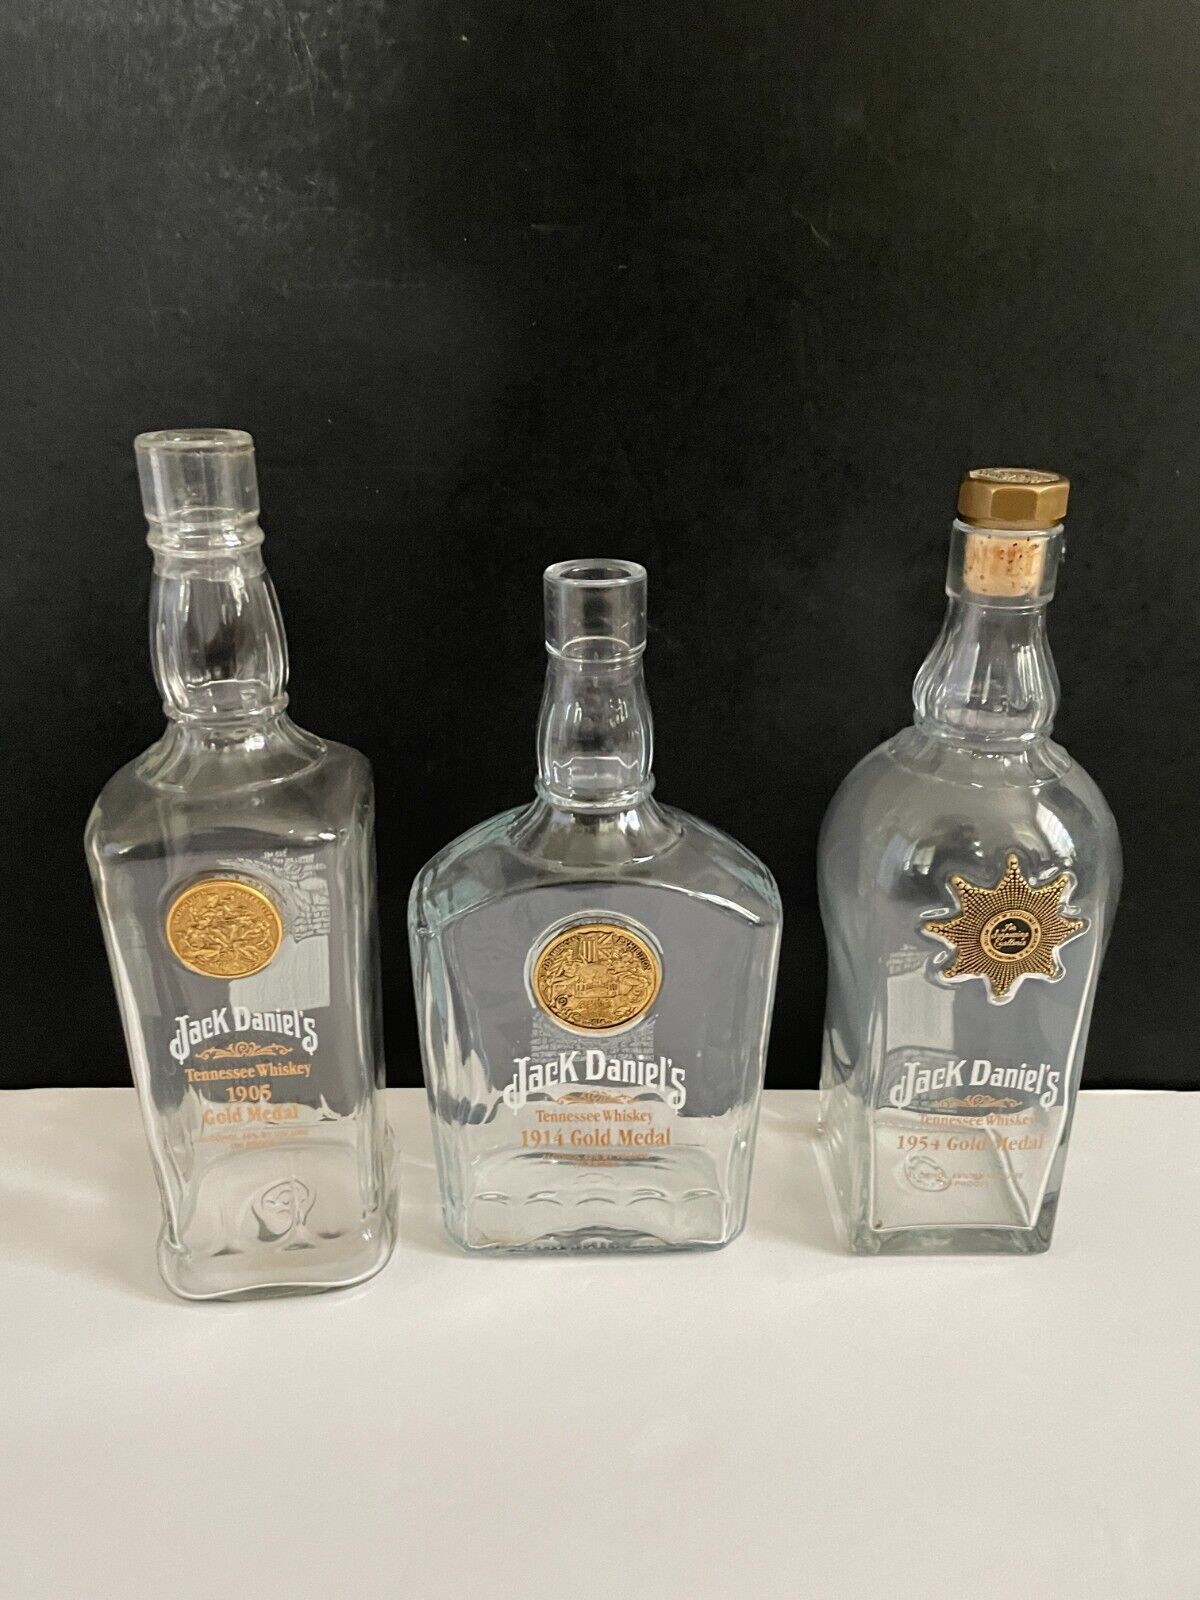 Jack Daniels 1905, 1914, 1954 Gold Medal EMPTY Bottles